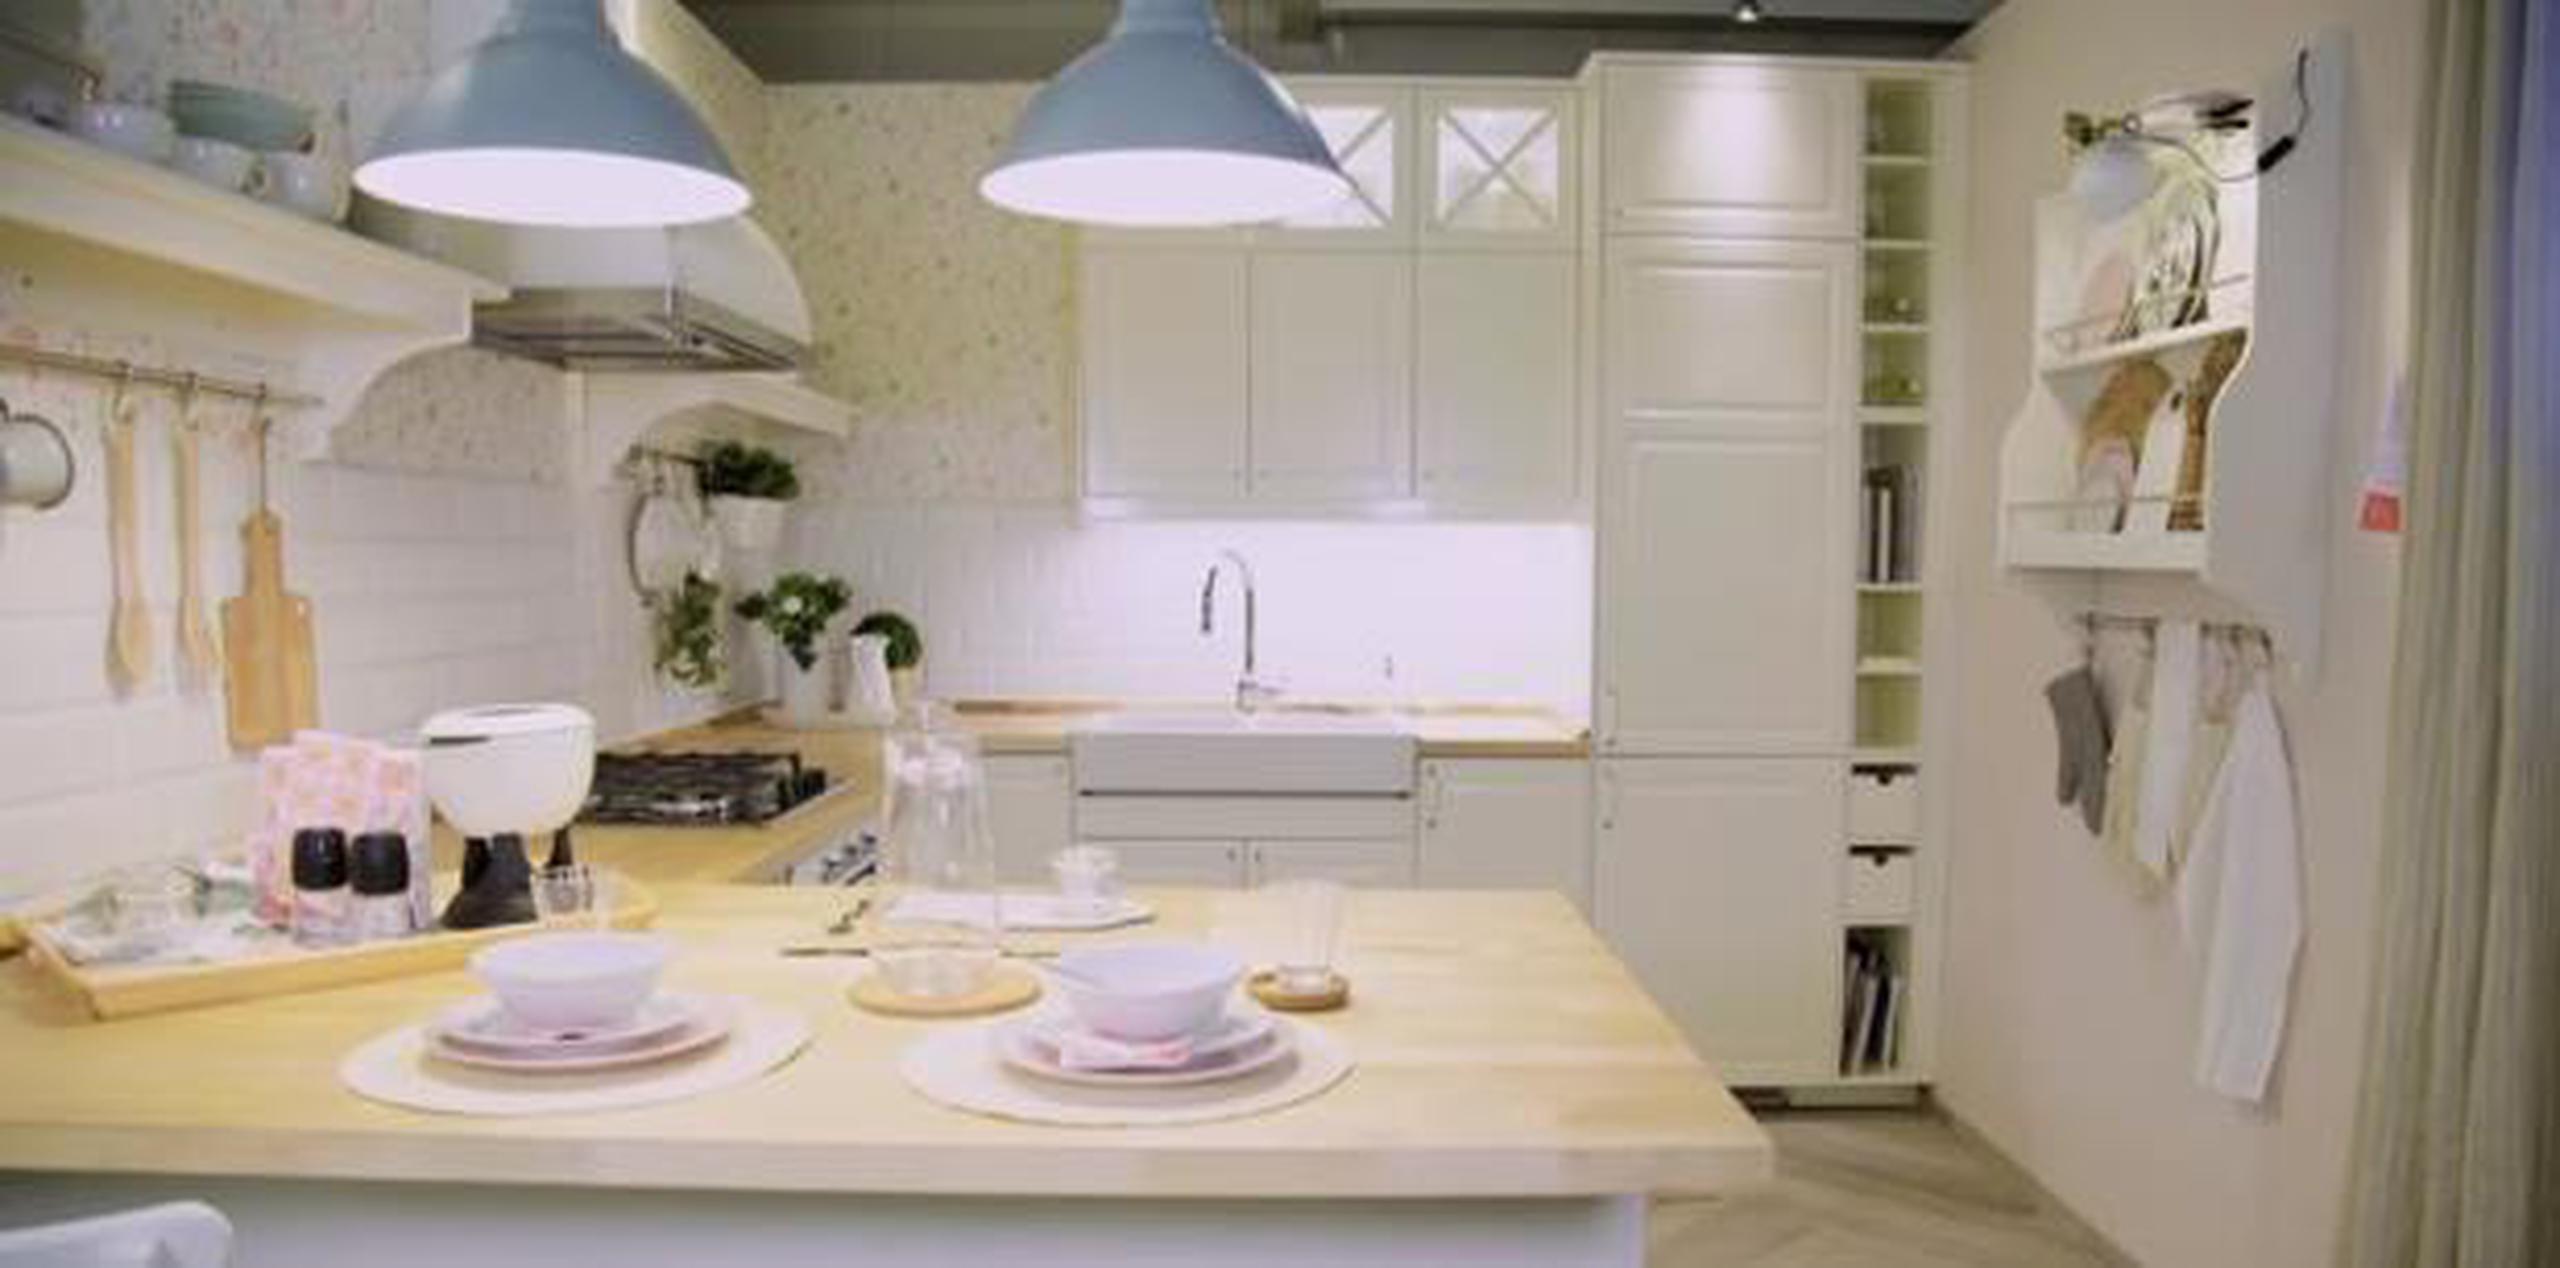 Darle un aire distinto a la cocina cambia por completo el espacio y los colores. (Captura)